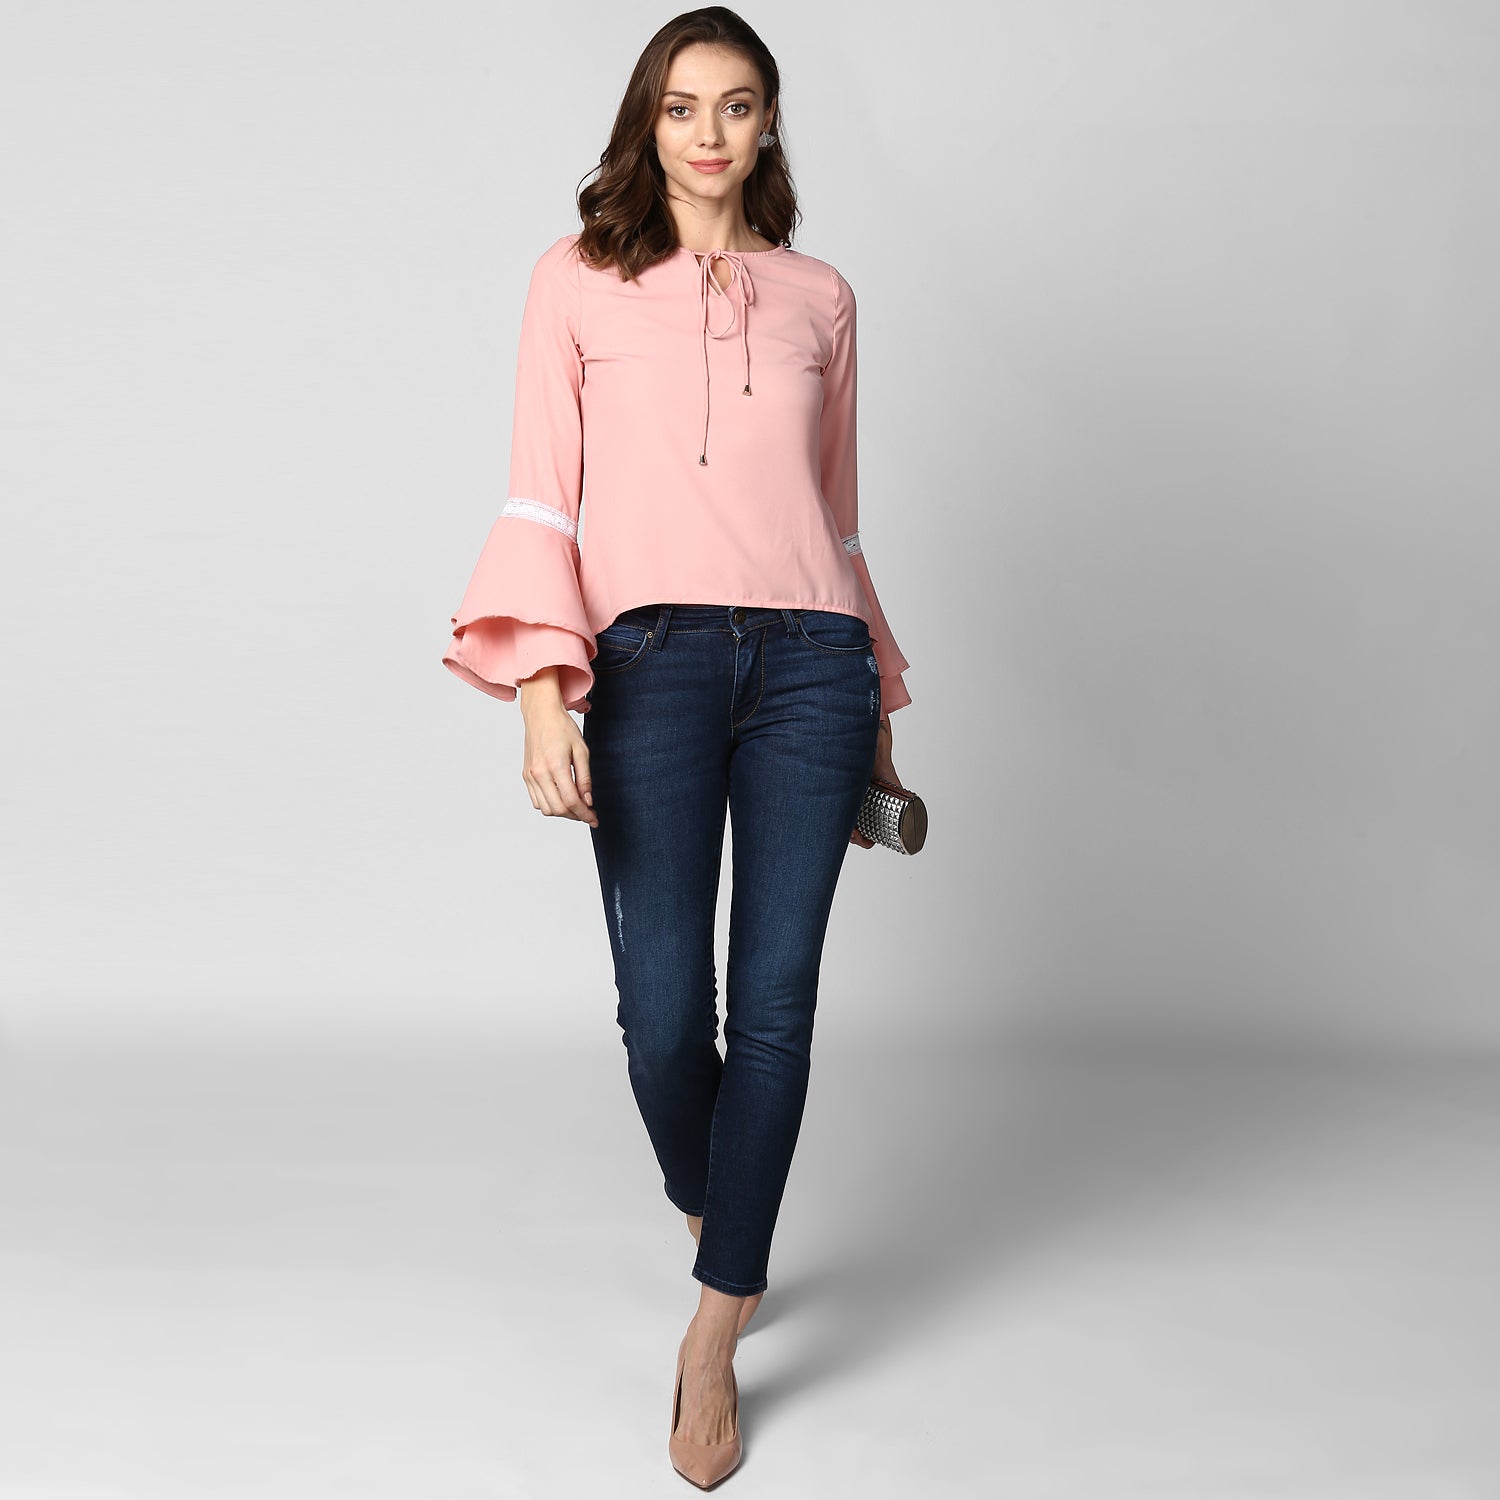 Women's Multi Tier Pink Top - StyleStone